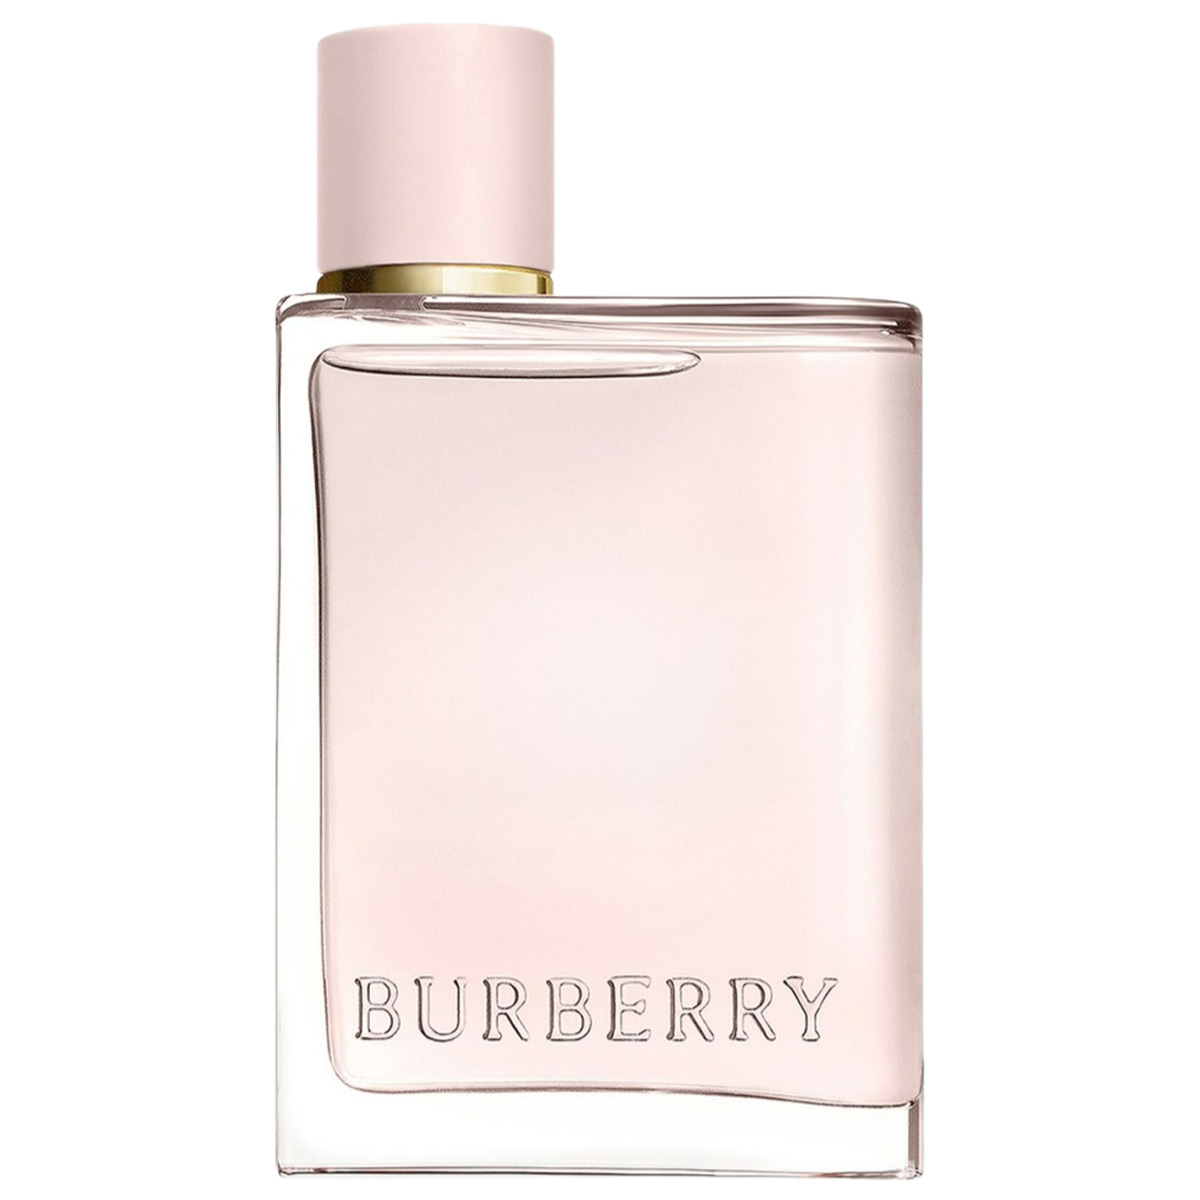 Burberry Her Eau de Parfum